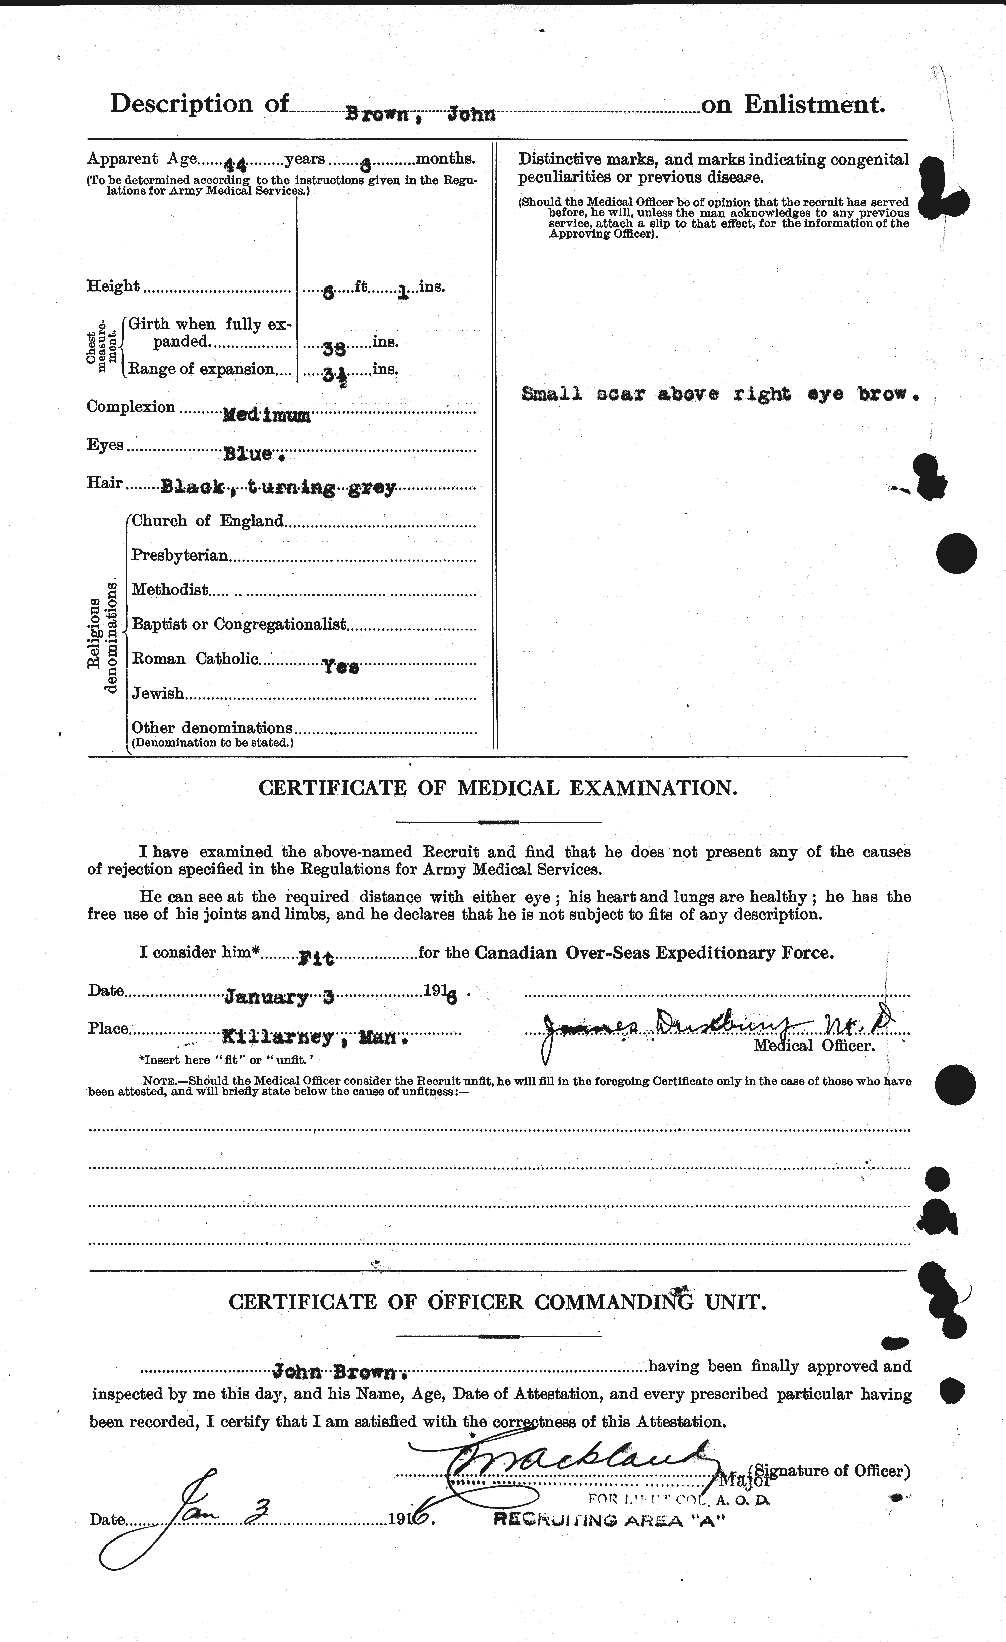 Dossiers du Personnel de la Première Guerre mondiale - CEC 265863b